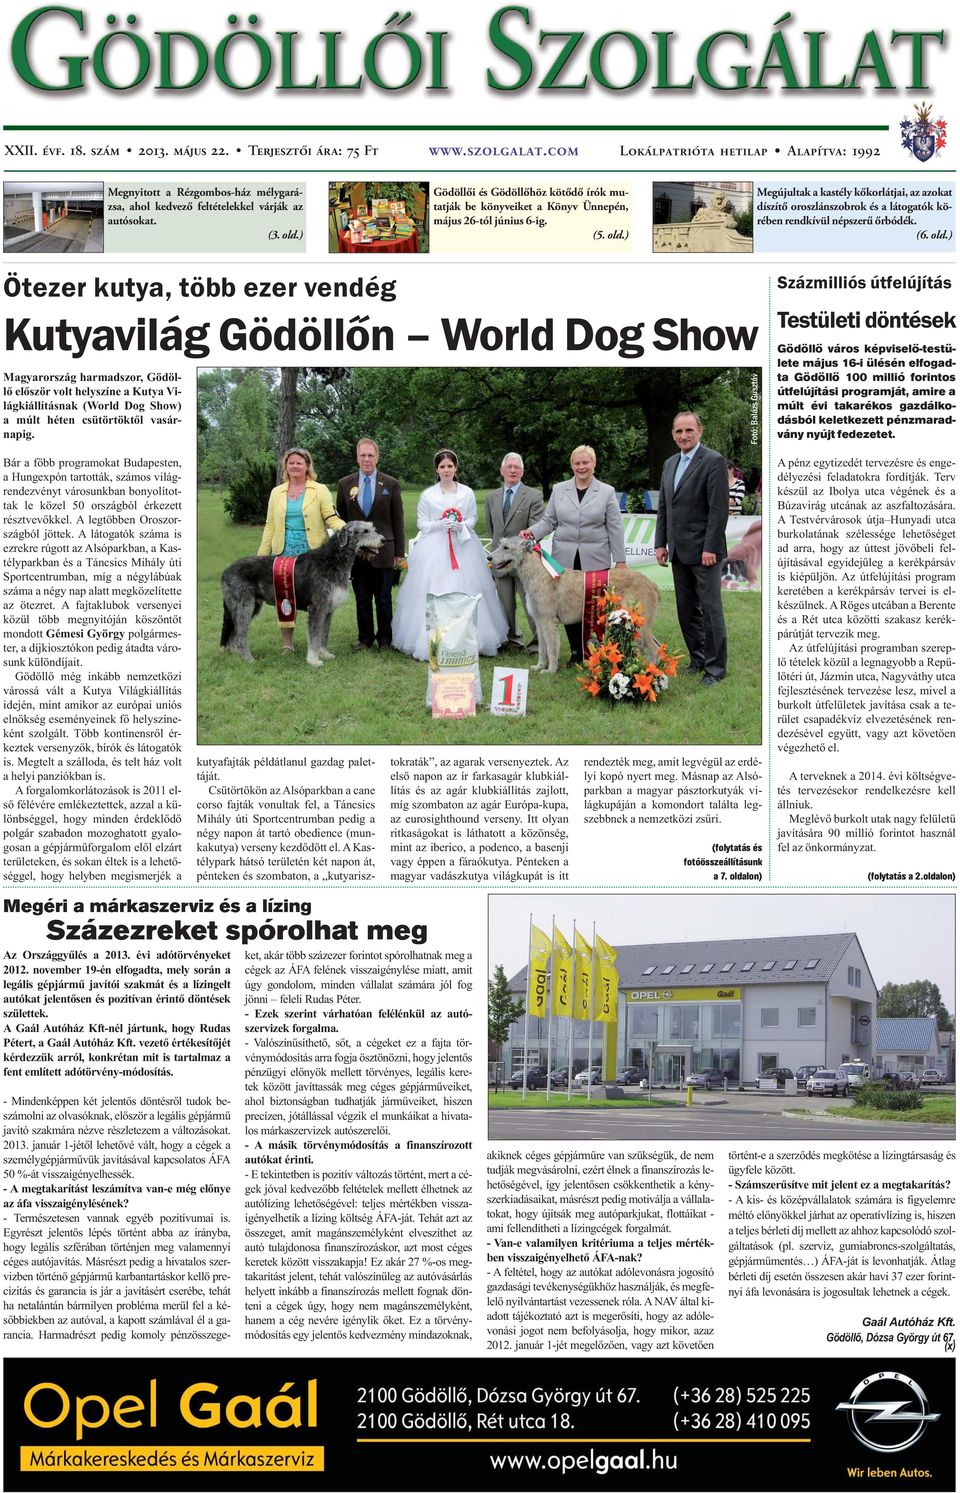 Kutyavilág Gödöllőn World Dog Show Magyarország harmadszor, Gödöllő először  volt helyszíne a Kutya Világkiállításnak - PDF Free Download